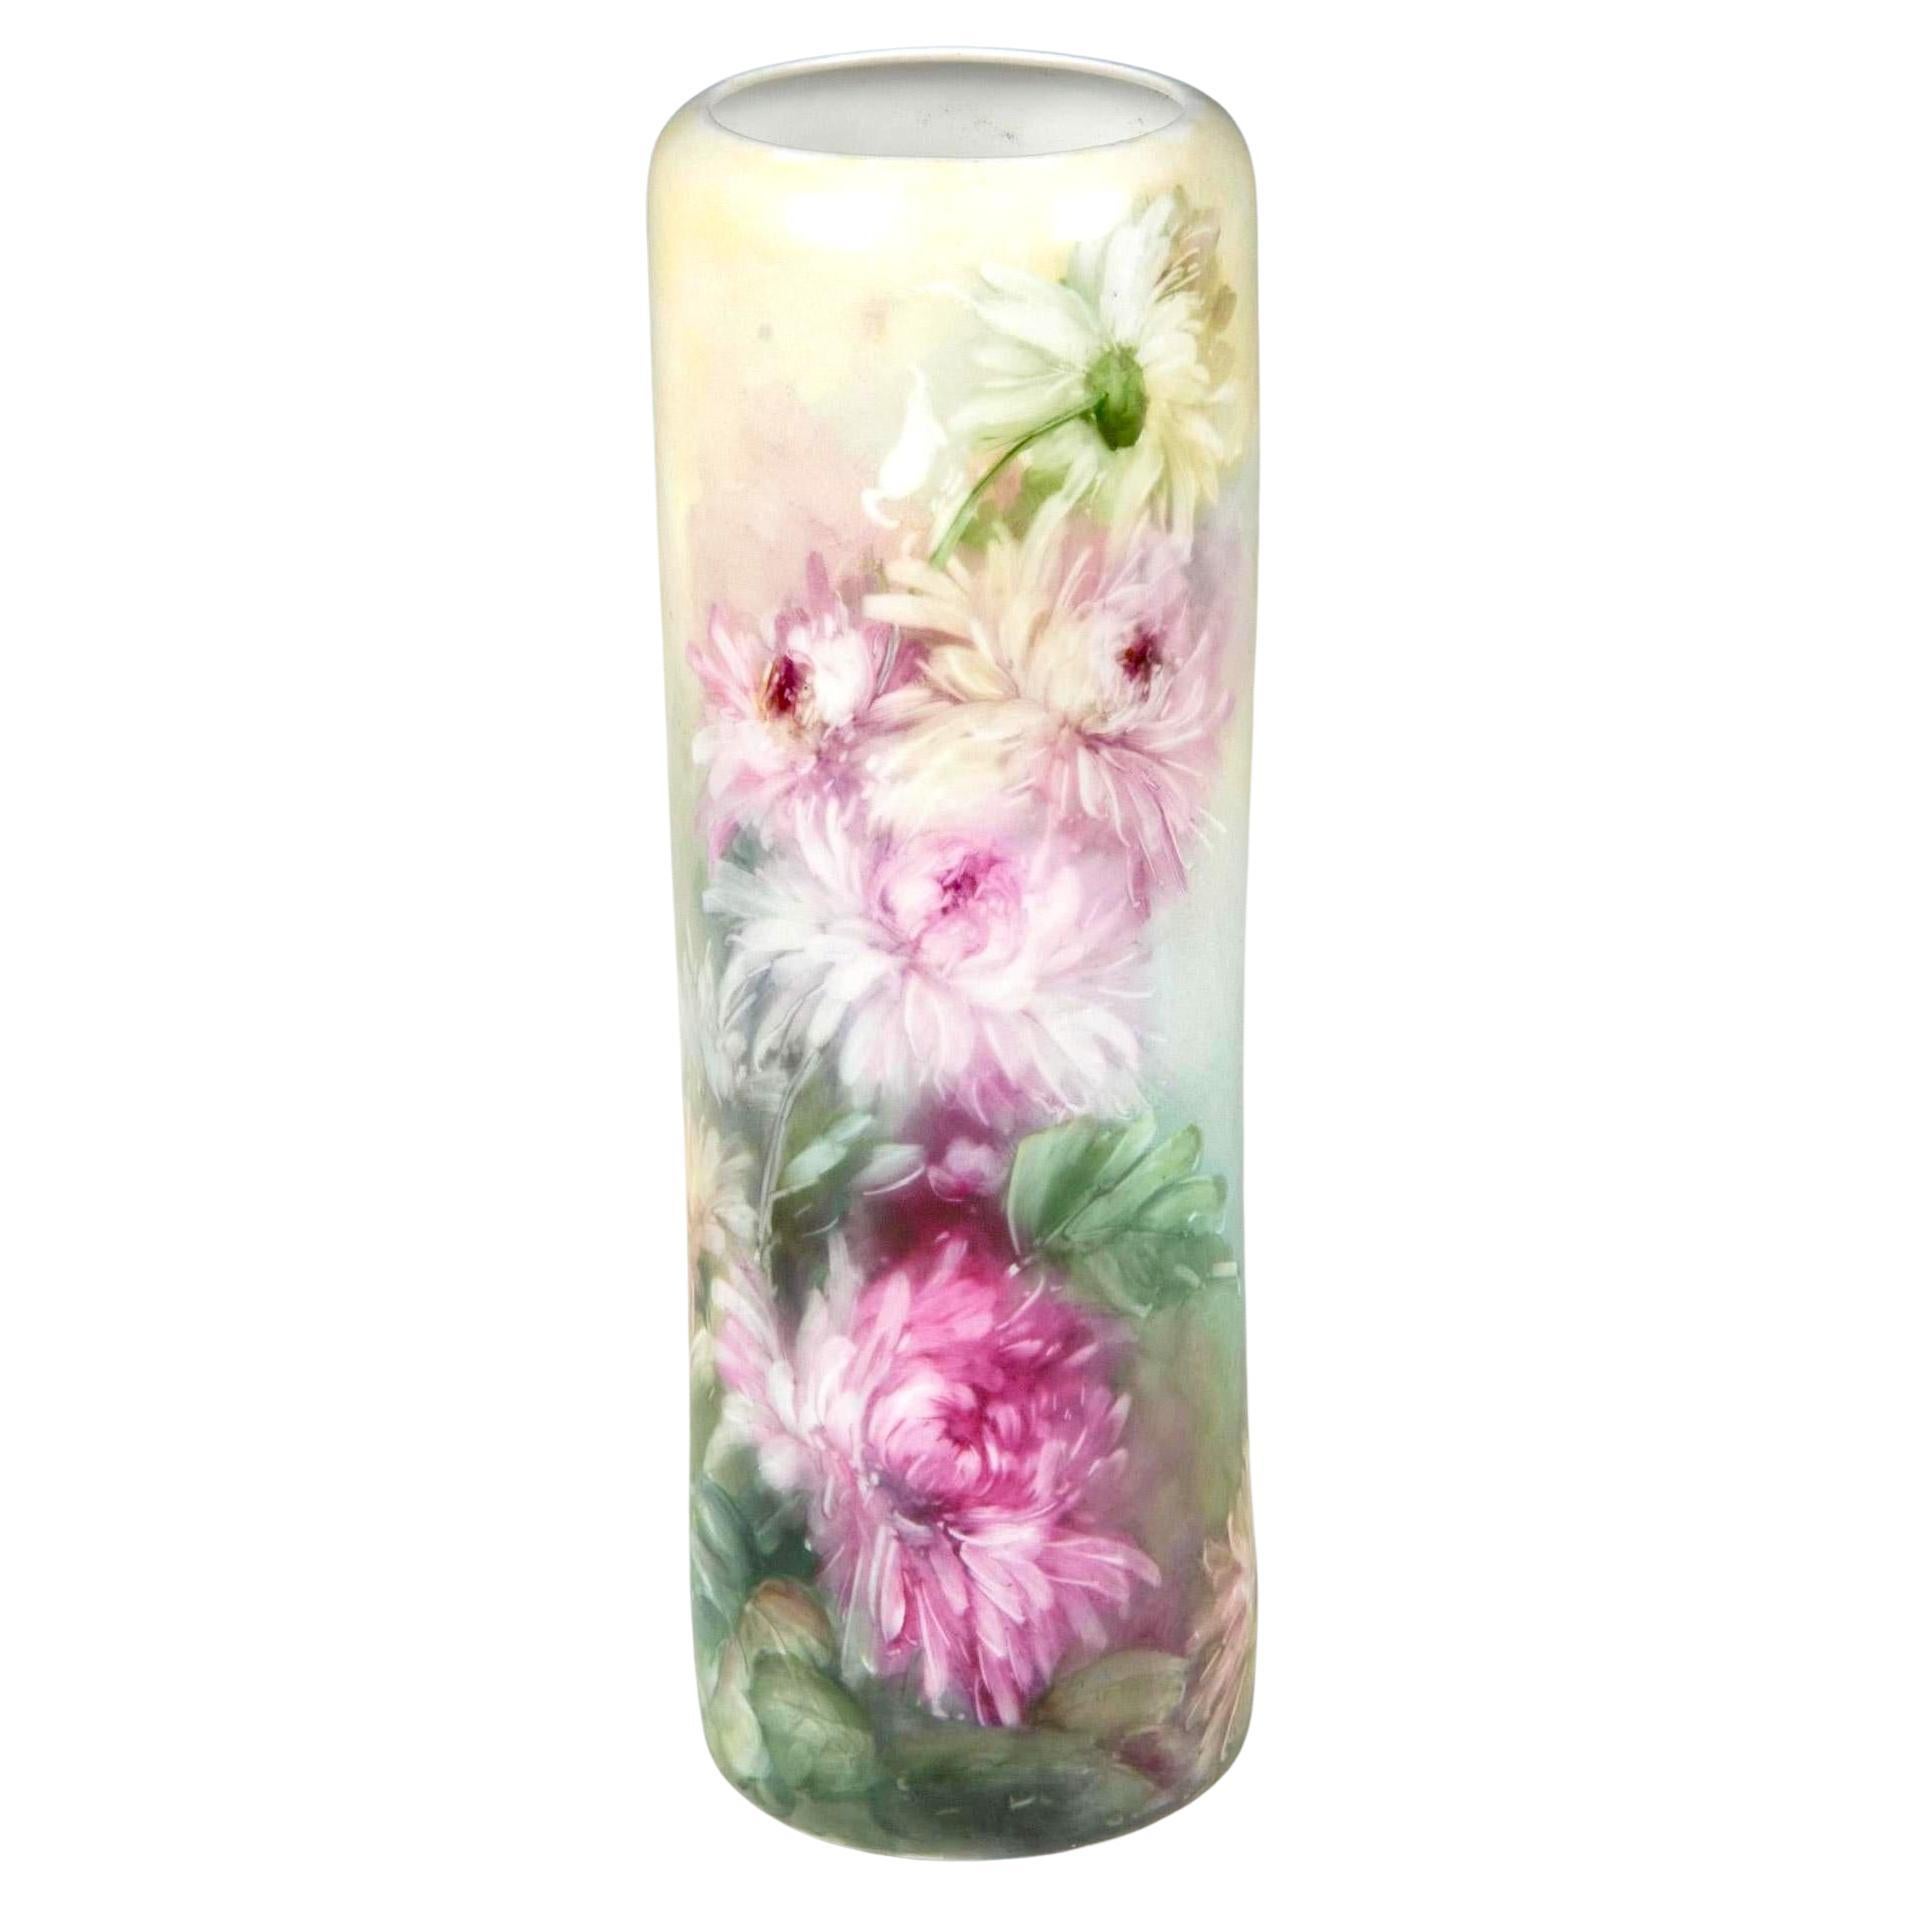 Antique Vienna Austria Hand Painted Porcelain Floral Vase By Leonard Co For Sale